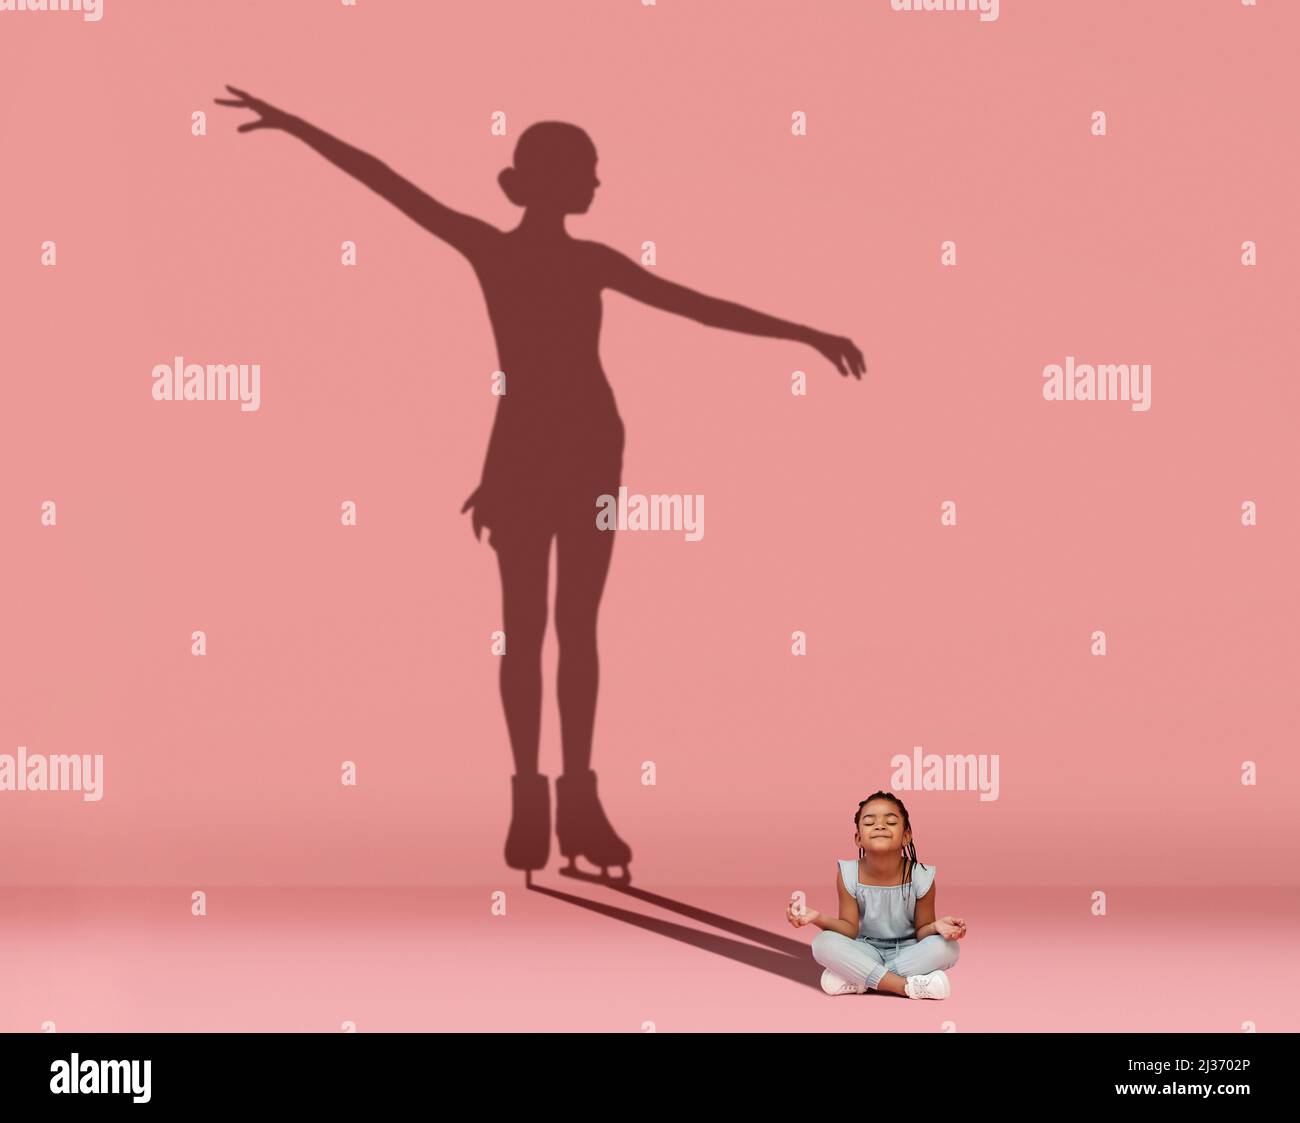 Kleines glückliches Mädchen, das auf dem Boden sitzt und davon träumt, Eiskunstläuferin zu werden, isoliert auf rosa Hintergrund. Sport, Karriere und Träume Konzept. Collage Stockfoto